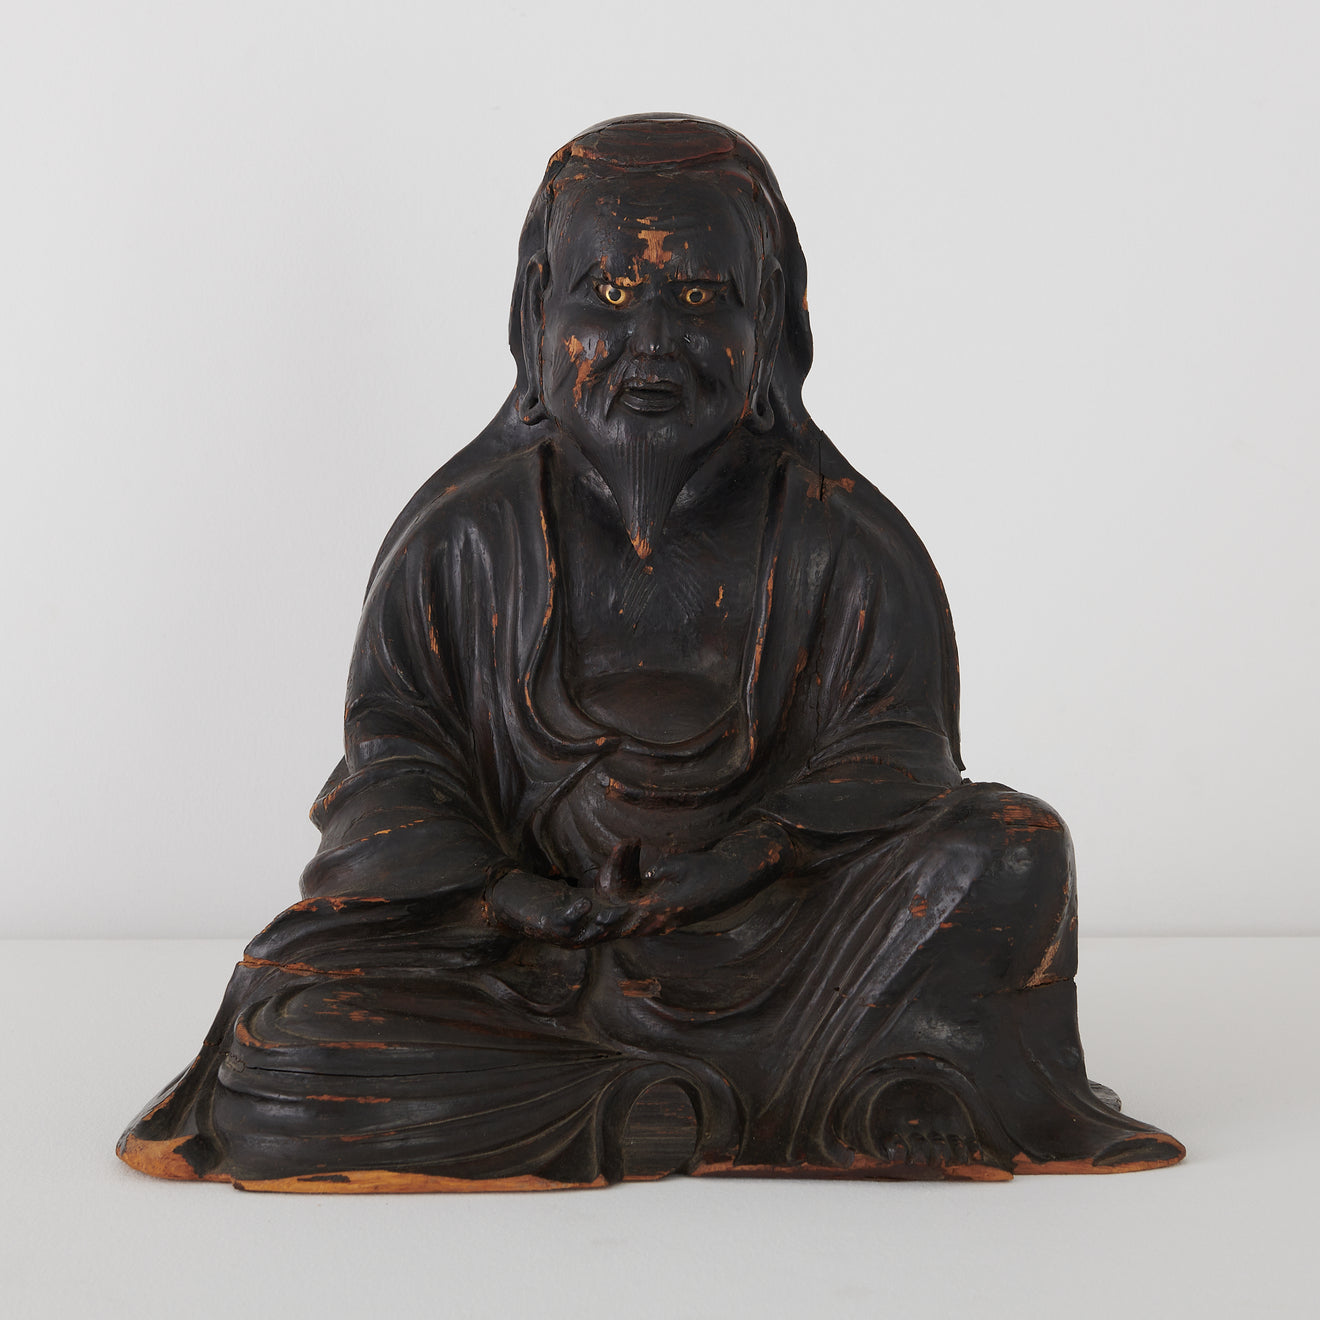 CARVED WOOD OPEN-EYED SITTING BUDDHA